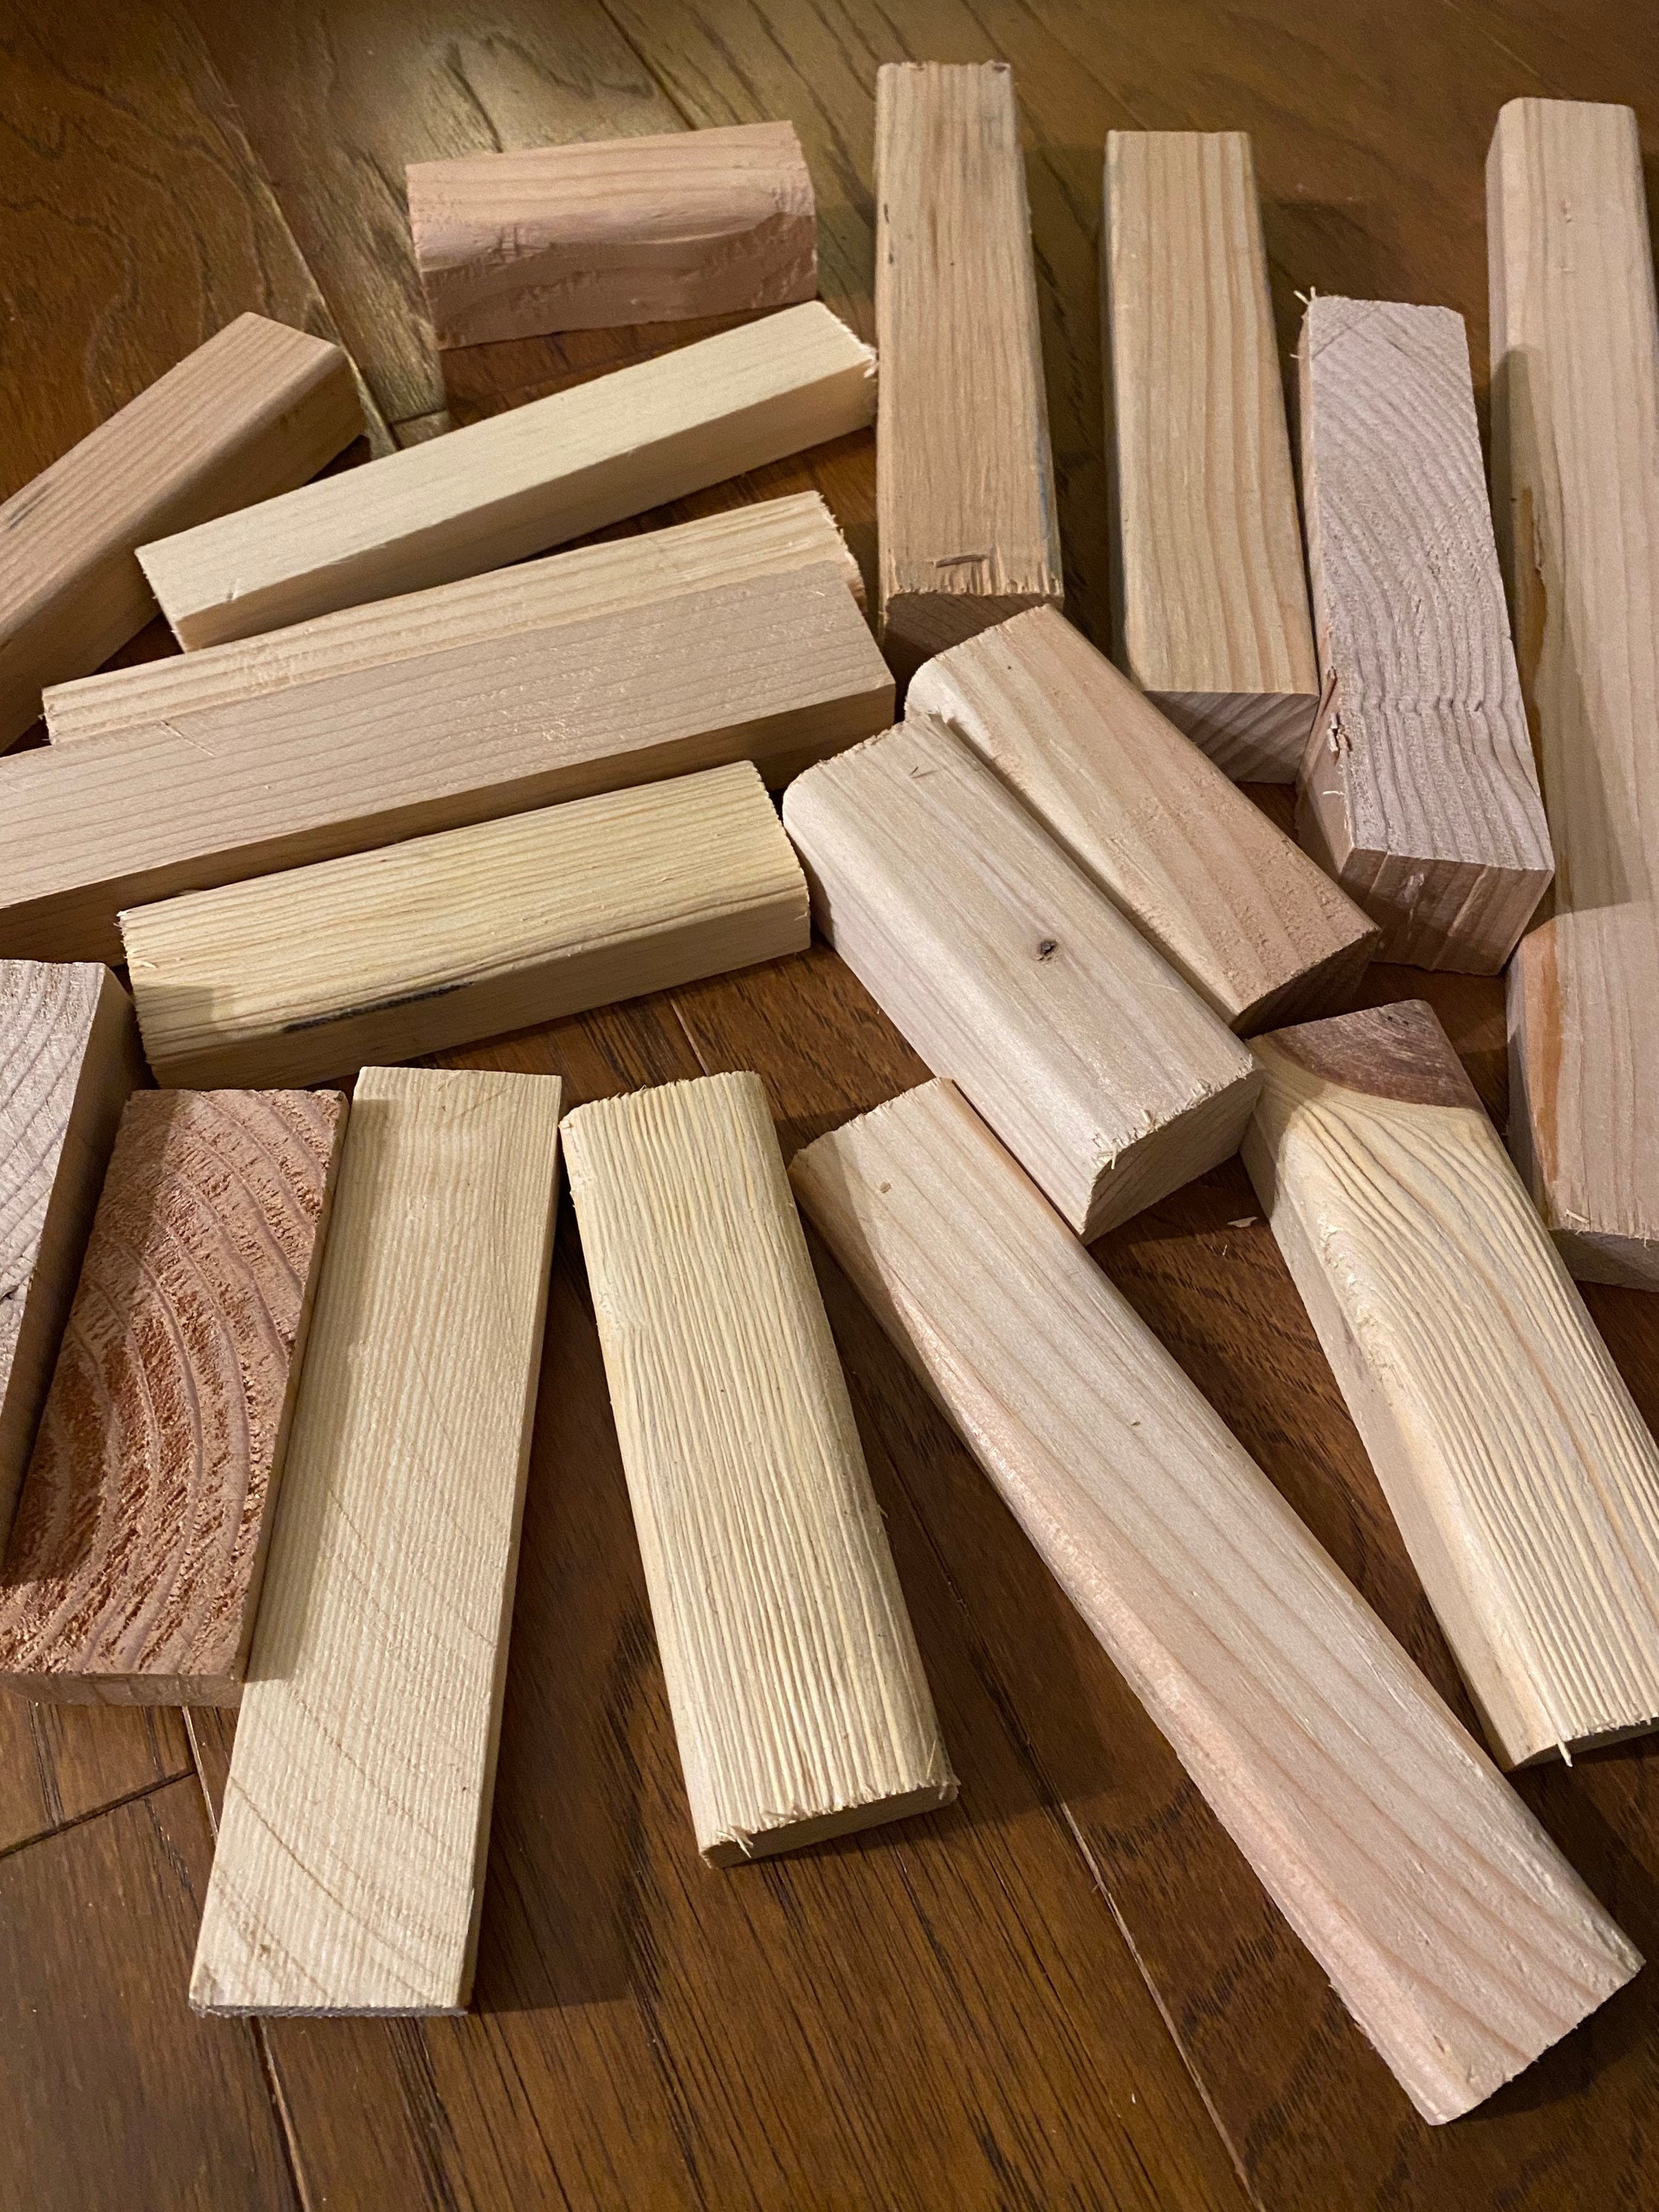  280 Pieces Balsa Wood Sticks 1/8 x 1/8 x 12 Inch Balsa